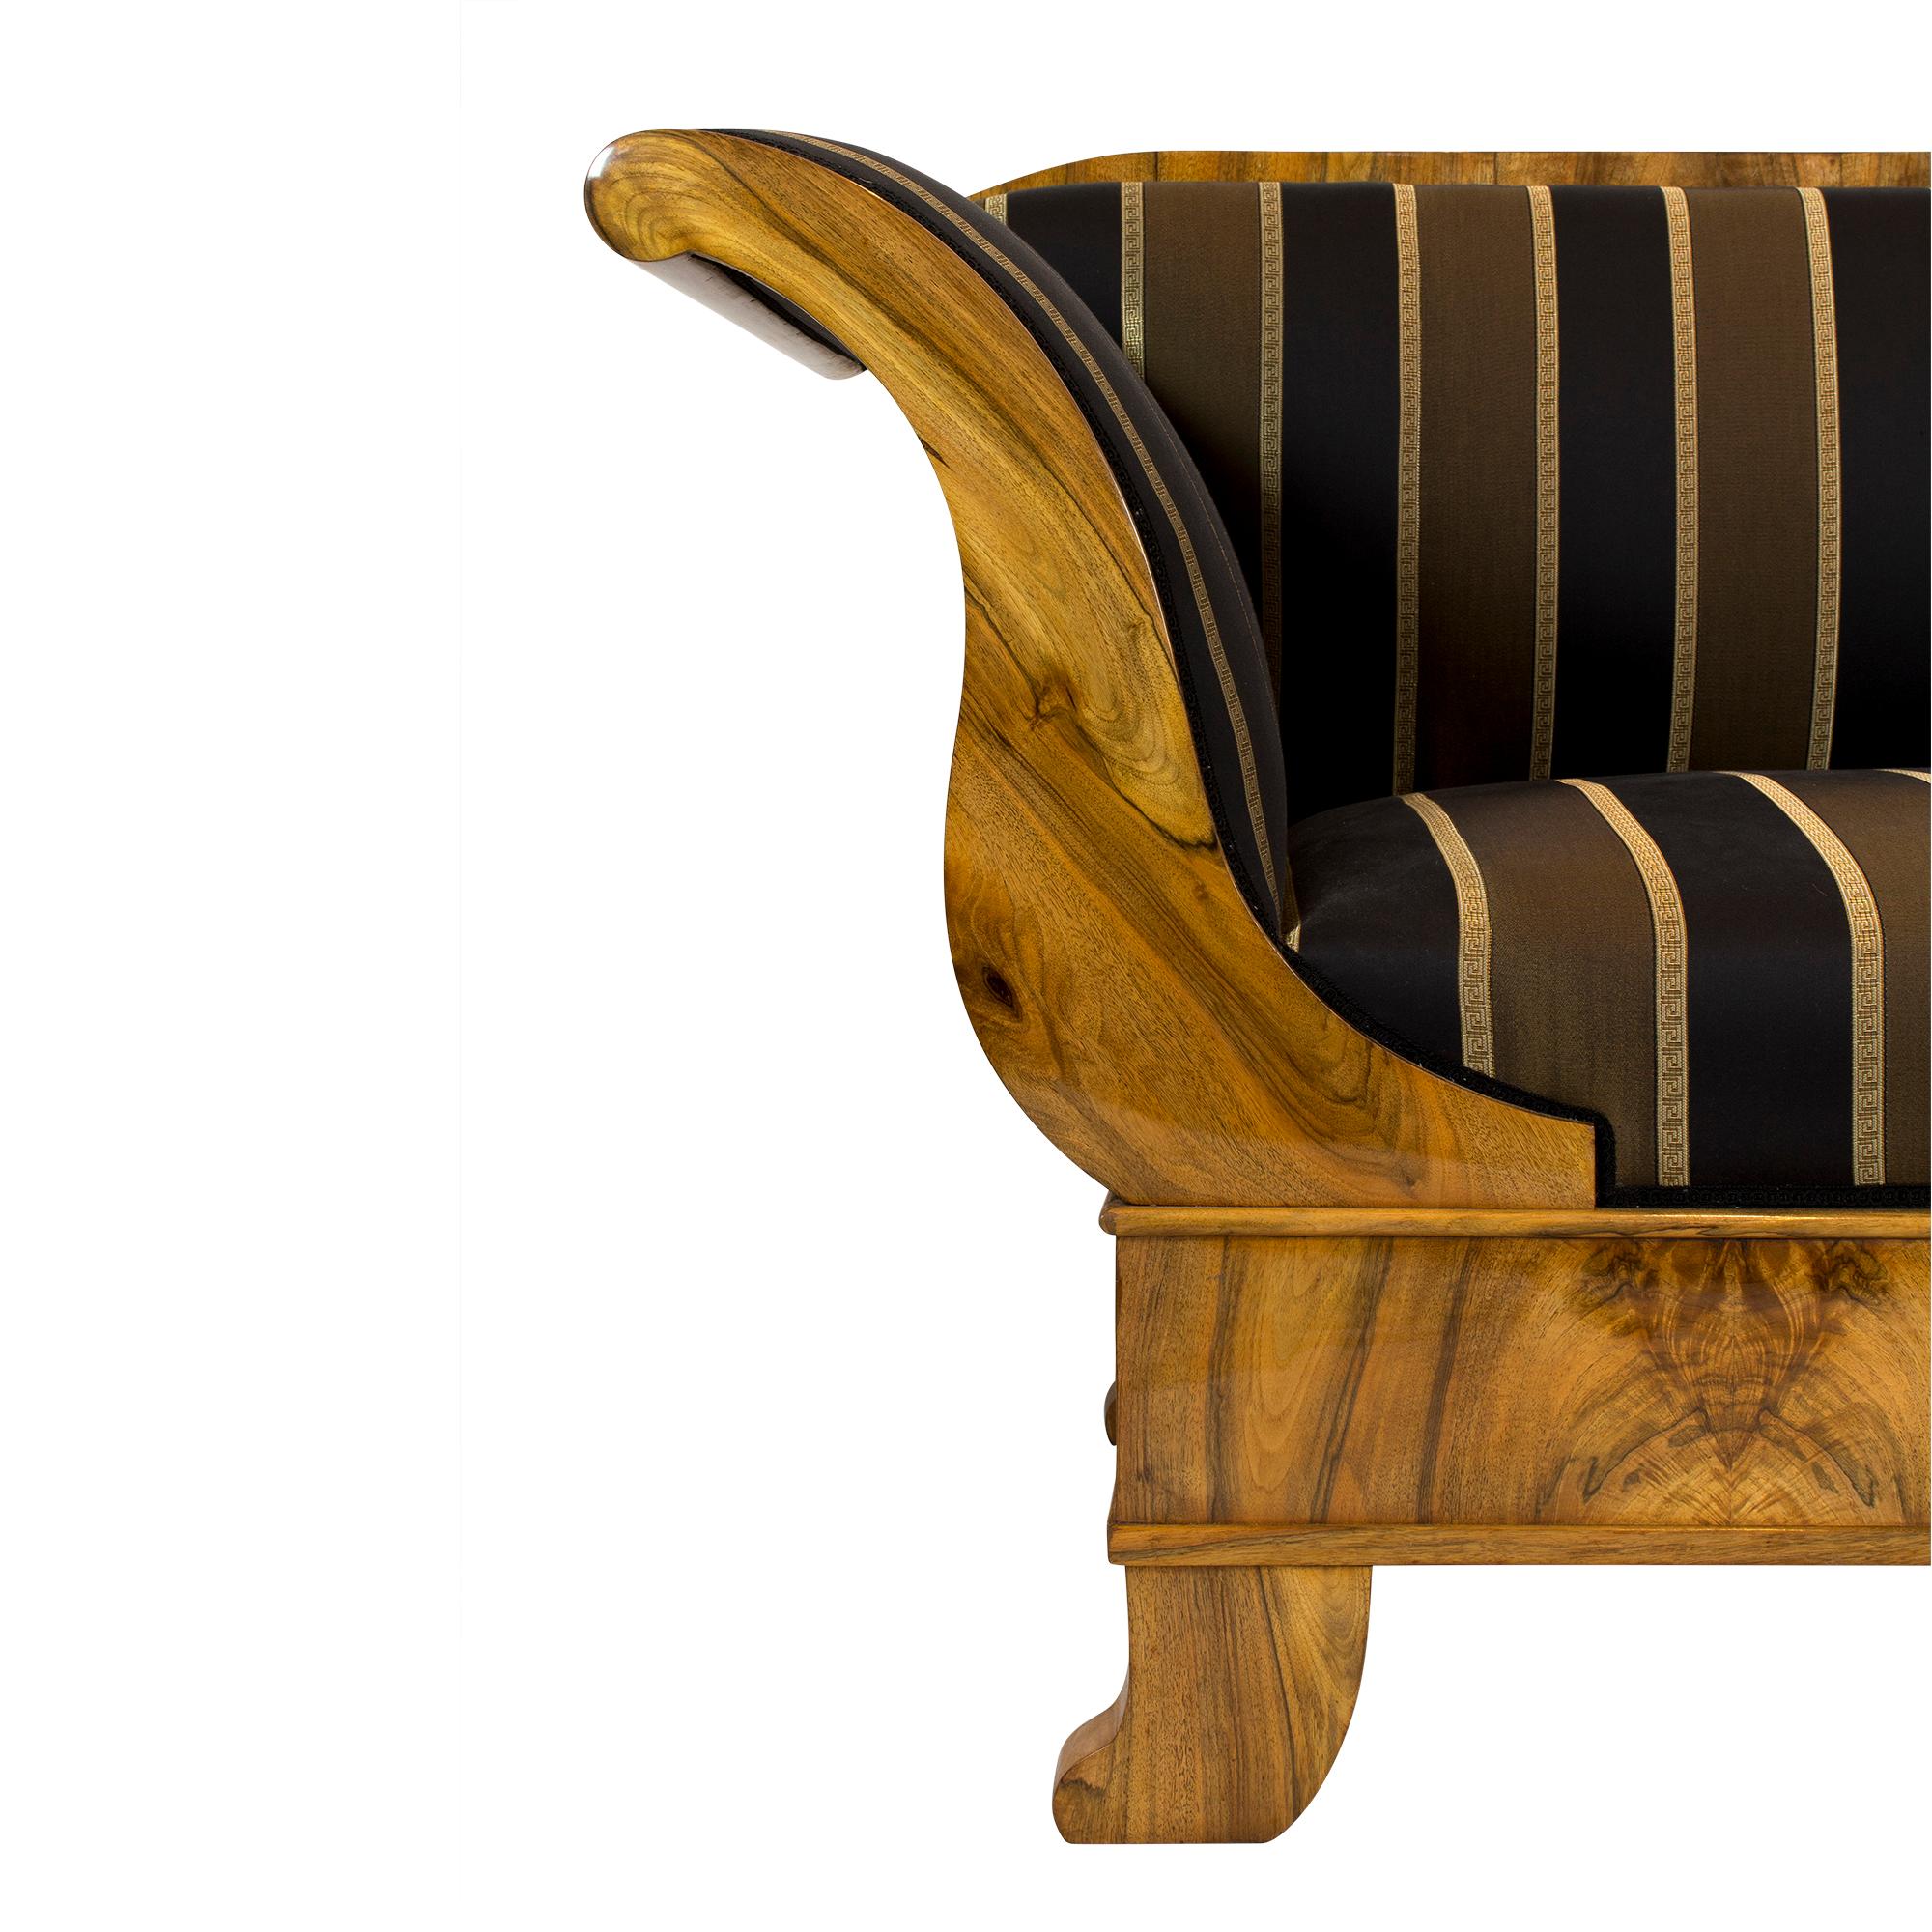 Das Sofa stammt aus der Biedermeierzeit zu Beginn des 19. Jahrhunderts. Der Korpus des Sofas ist aus Fichtenholz gefertigt und wurde mit einem sehr schönen Nussbaumfurnier überzogen, das gespiegelt angebracht wurde. Das Sofa ist in sehr gutem